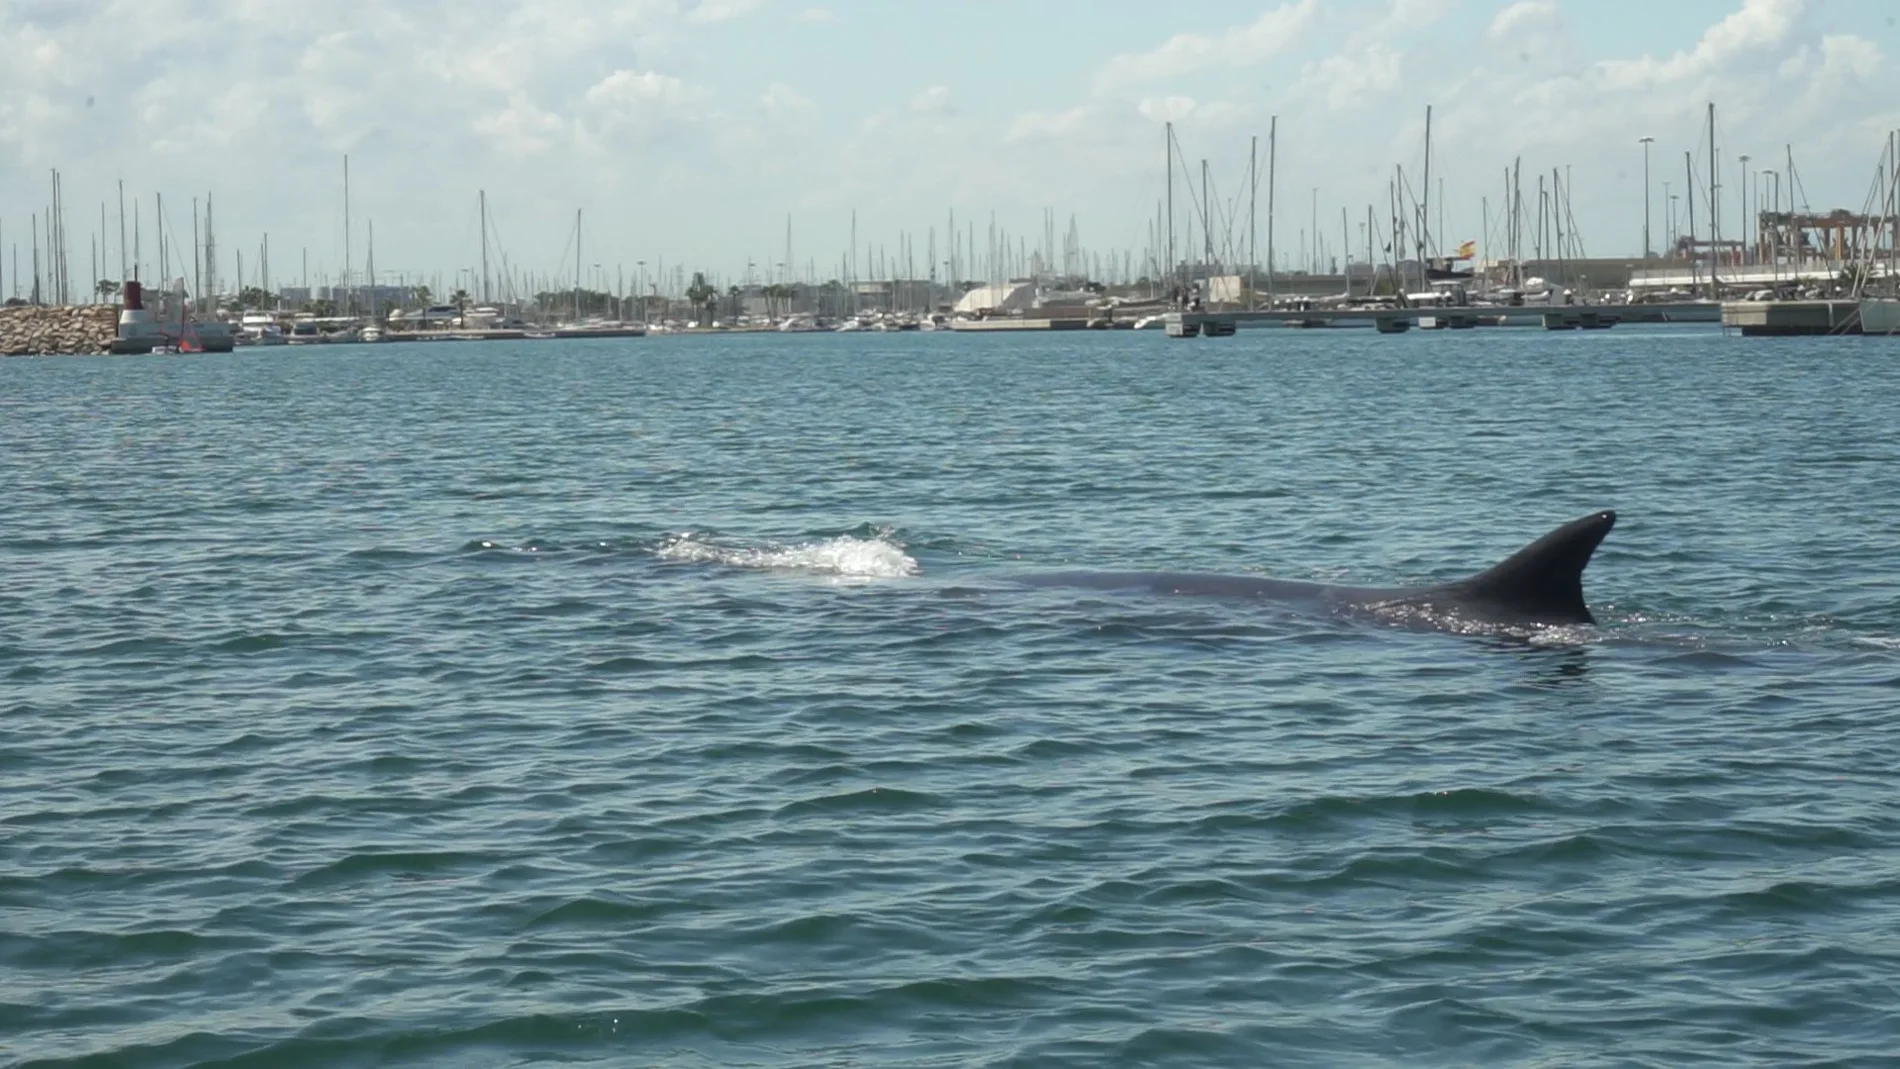 La ballena presentaba heridas superficiales ocasionadas tras haber chocado con alguna embarcación